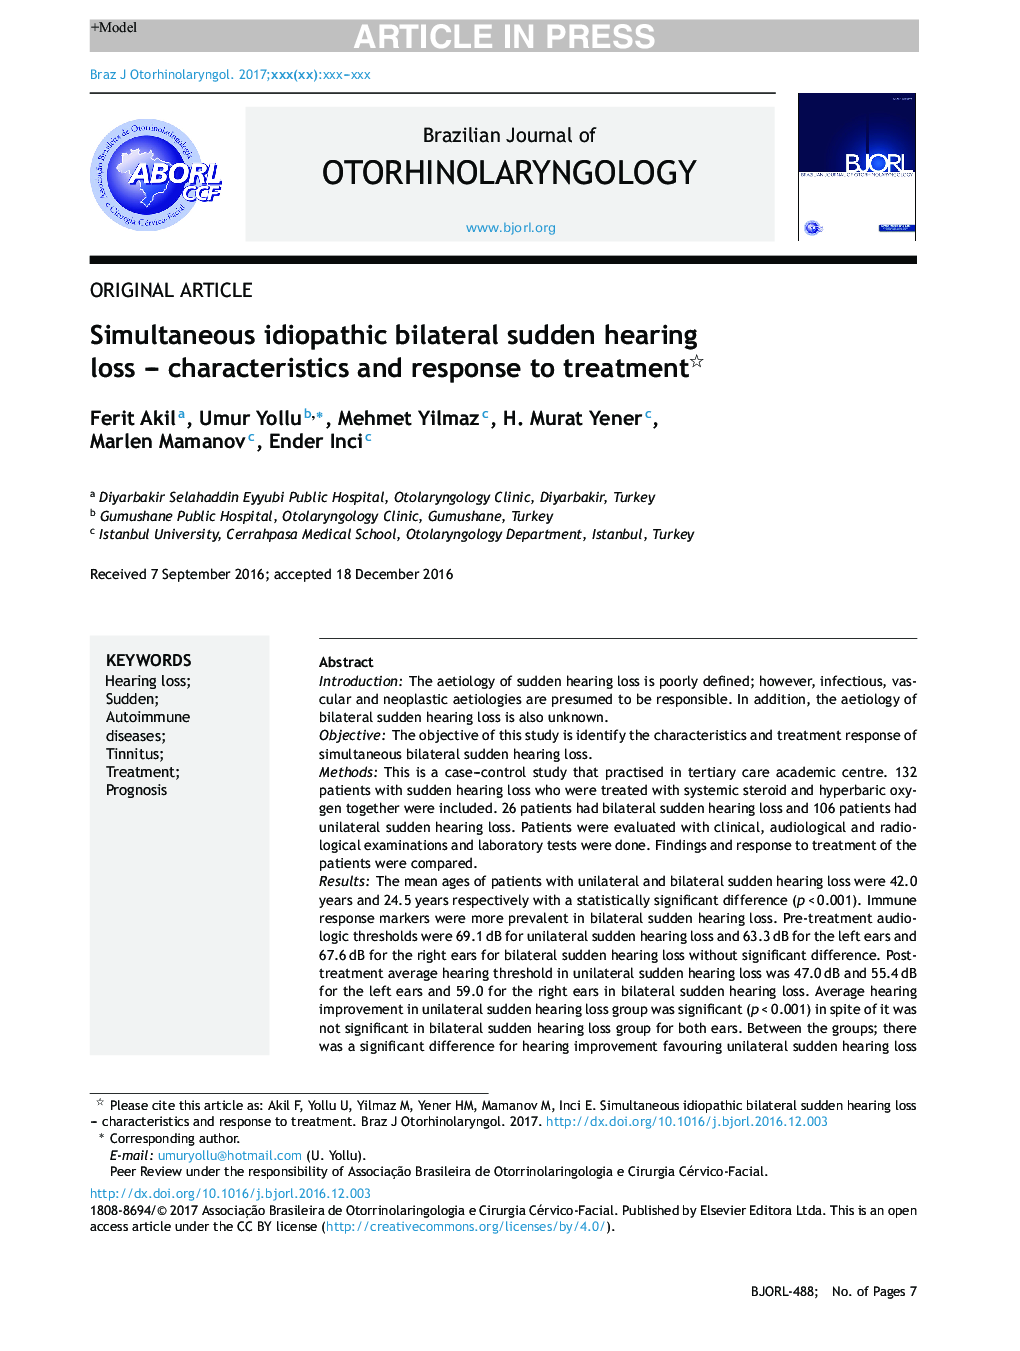 همزمان دو طرفه ایدئوپاتیک دو طرفه ناگهانی شنوایی - ویژگی ها و پاسخ به درمان 